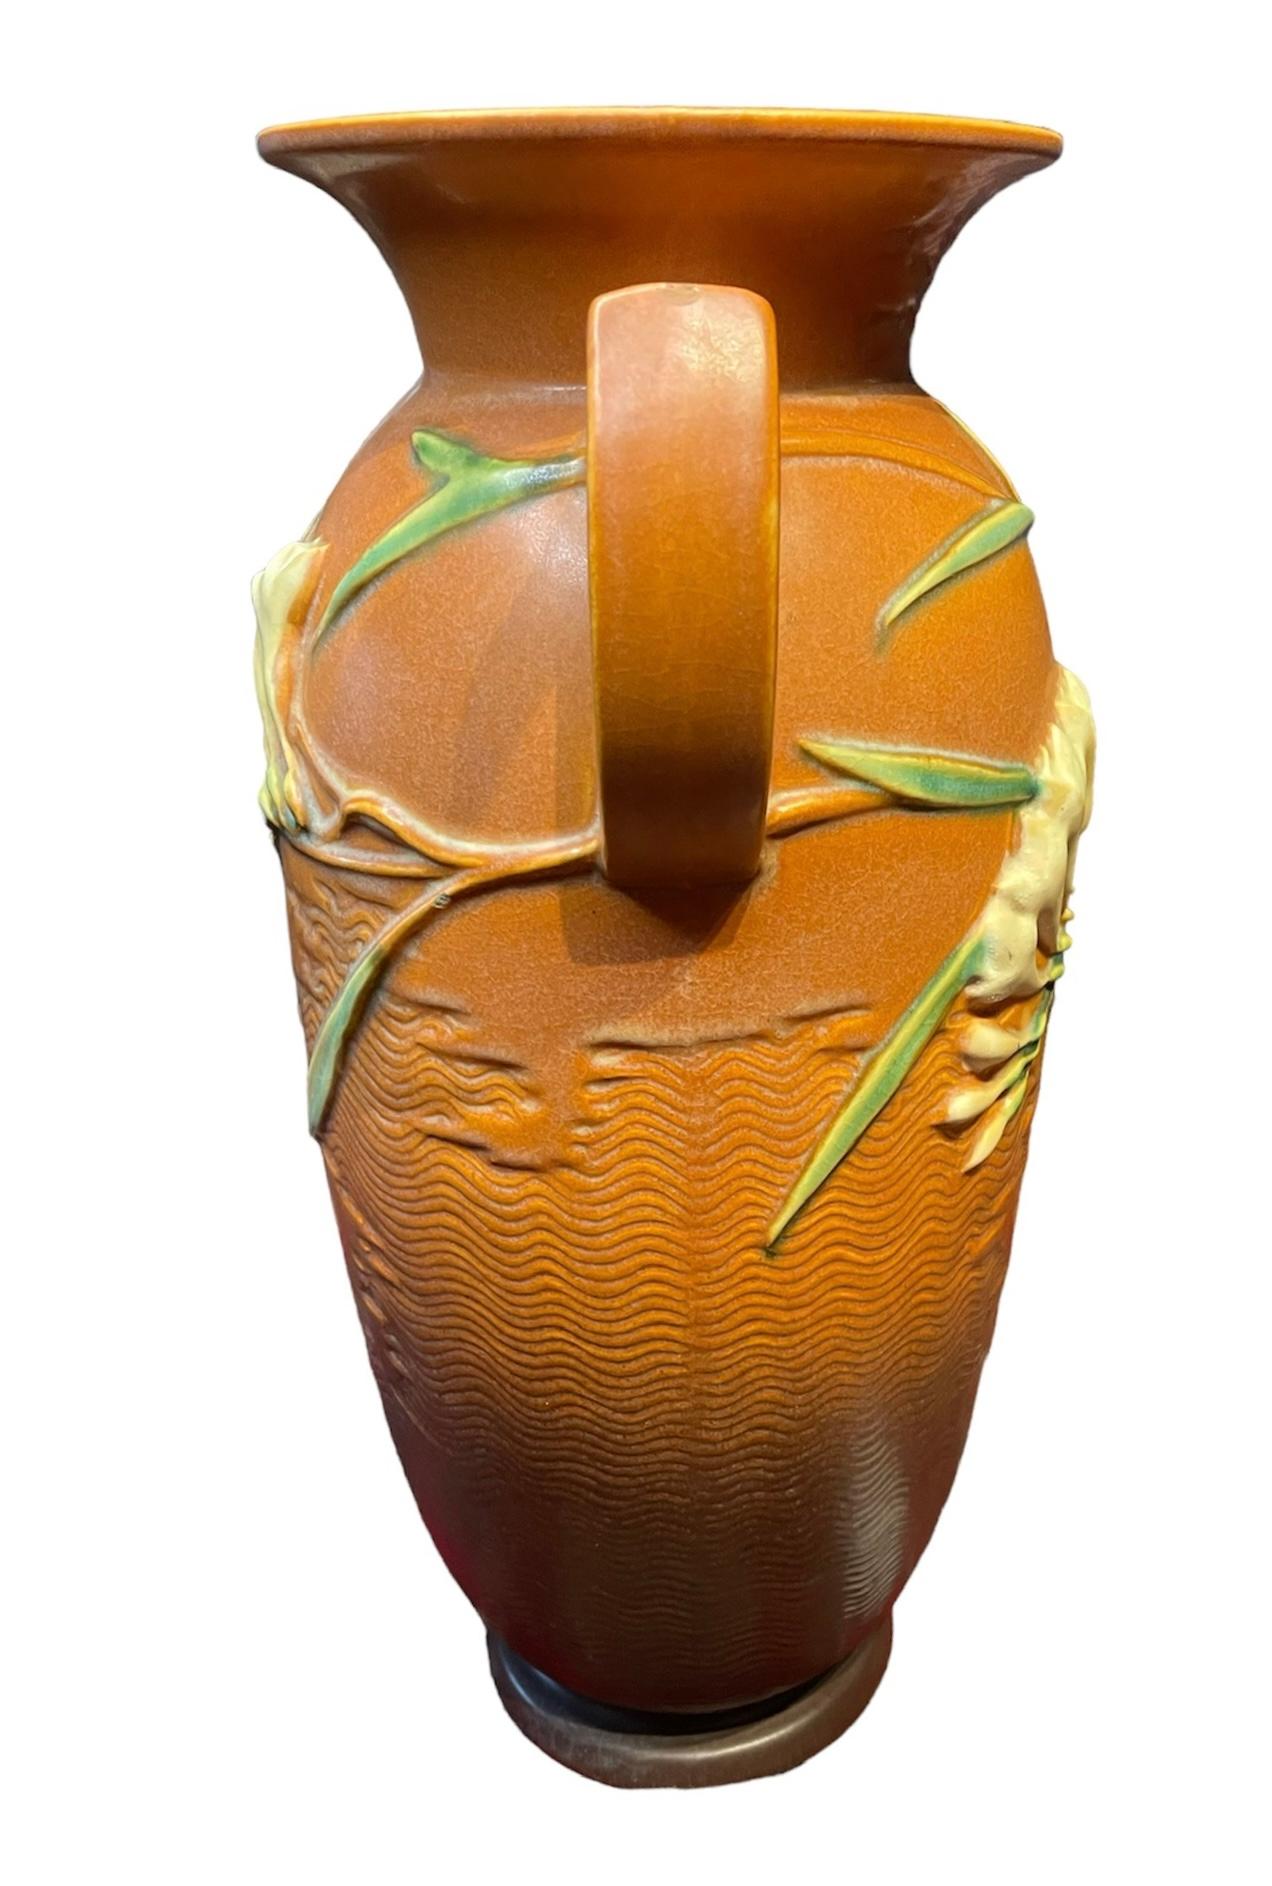 Dies ist ein Ziegel / Lehm Farbe jar geformt Roseville Vase. Es ist mit einem Relief aus langen grünen Blättern und Zweigen mit weißen und gelben Freesienblüten auf der Vorder- und Rückseite verziert. Zwei D-förmige Griffe ragen an jeder Seite des